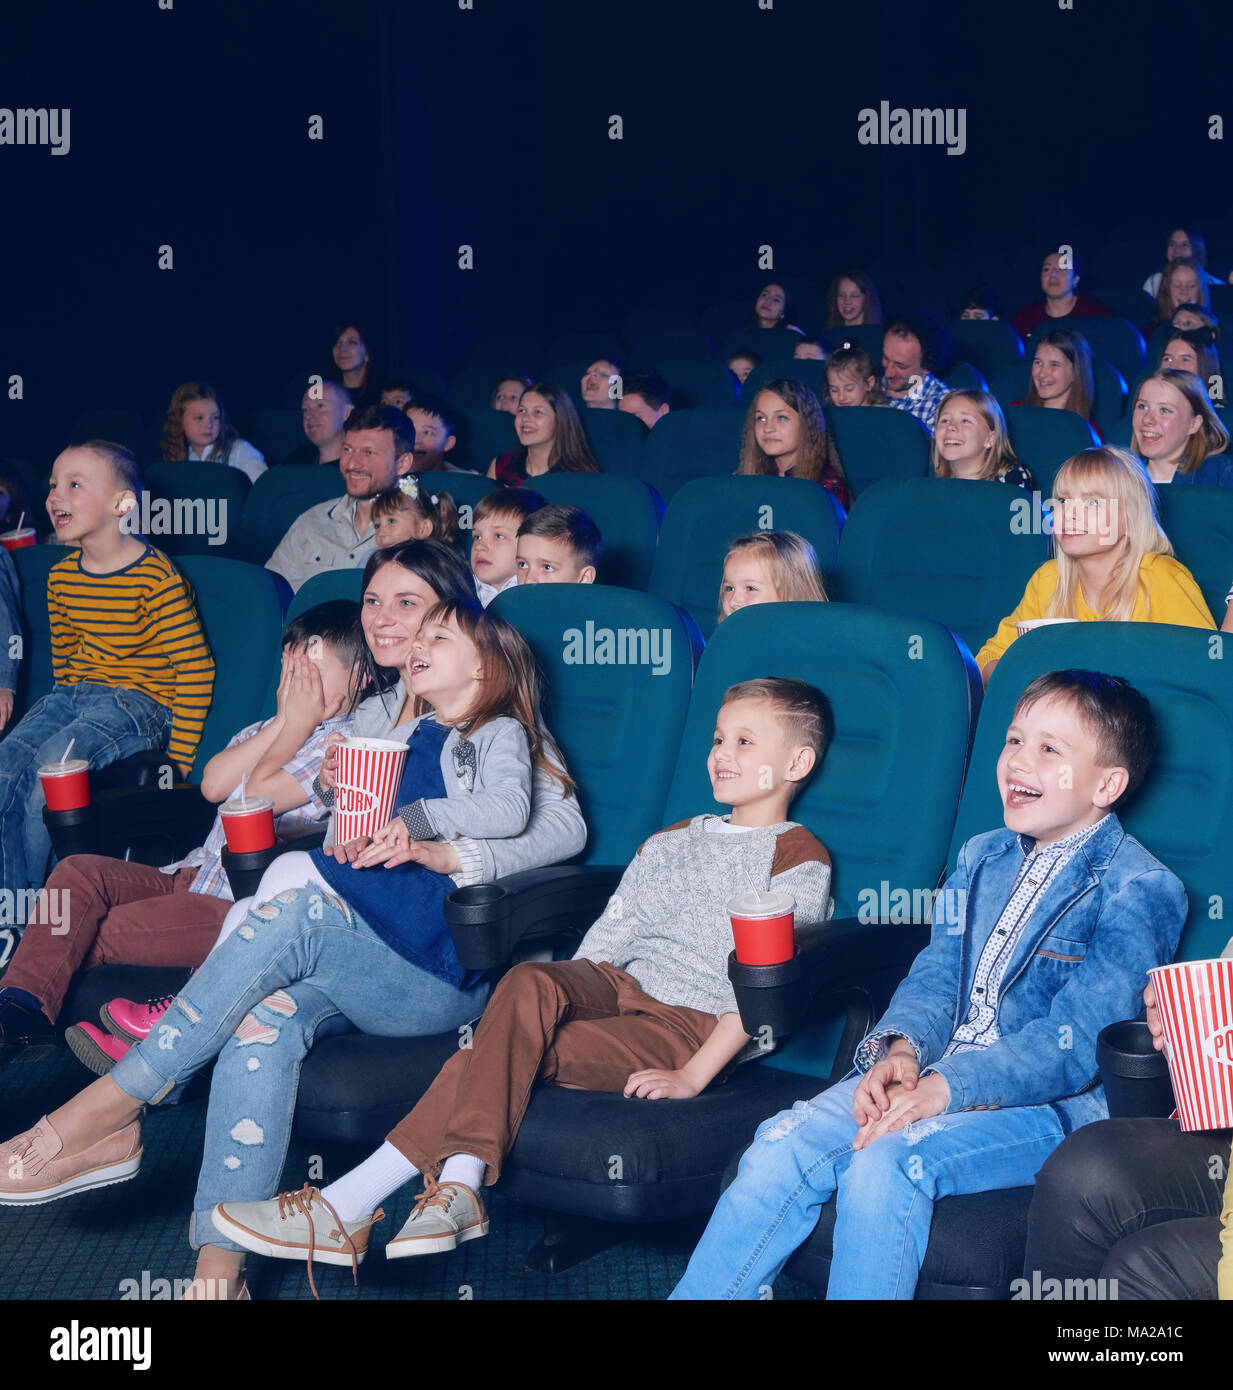 Des enfants heureux de Weda, intéressant regarder film drôle, assis sur de confortables places vert. Les garçons et les filles de rire, sourire, manger du pop-corn et de boire des boissons gazeuses. Banque D'Images